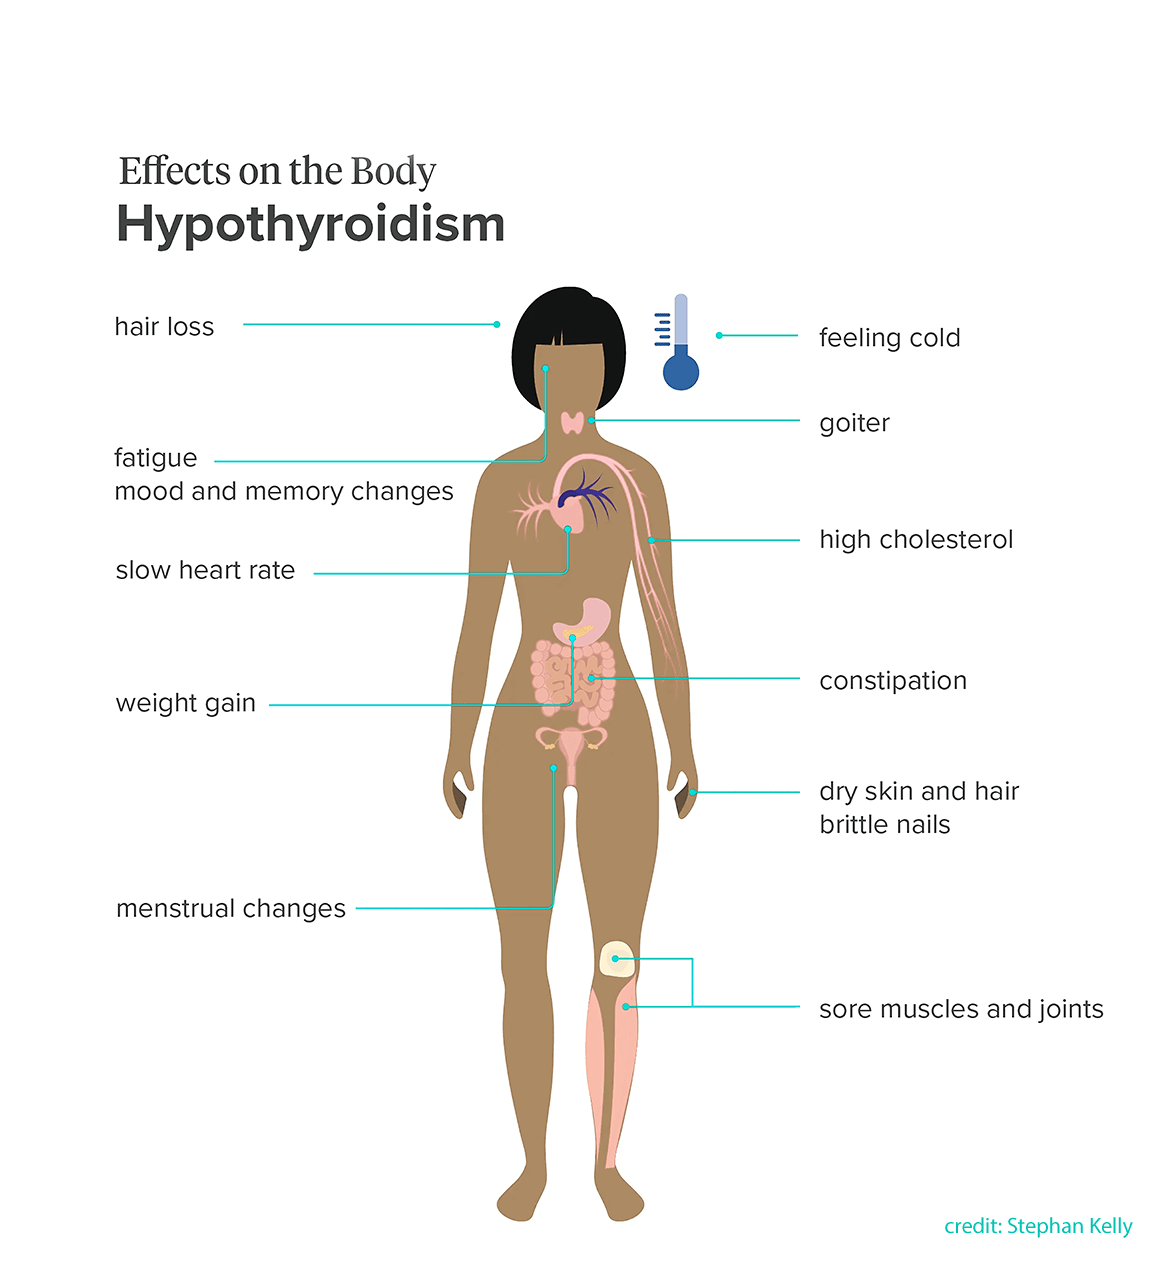 Hypothyroidism (Underactive Thyroid)